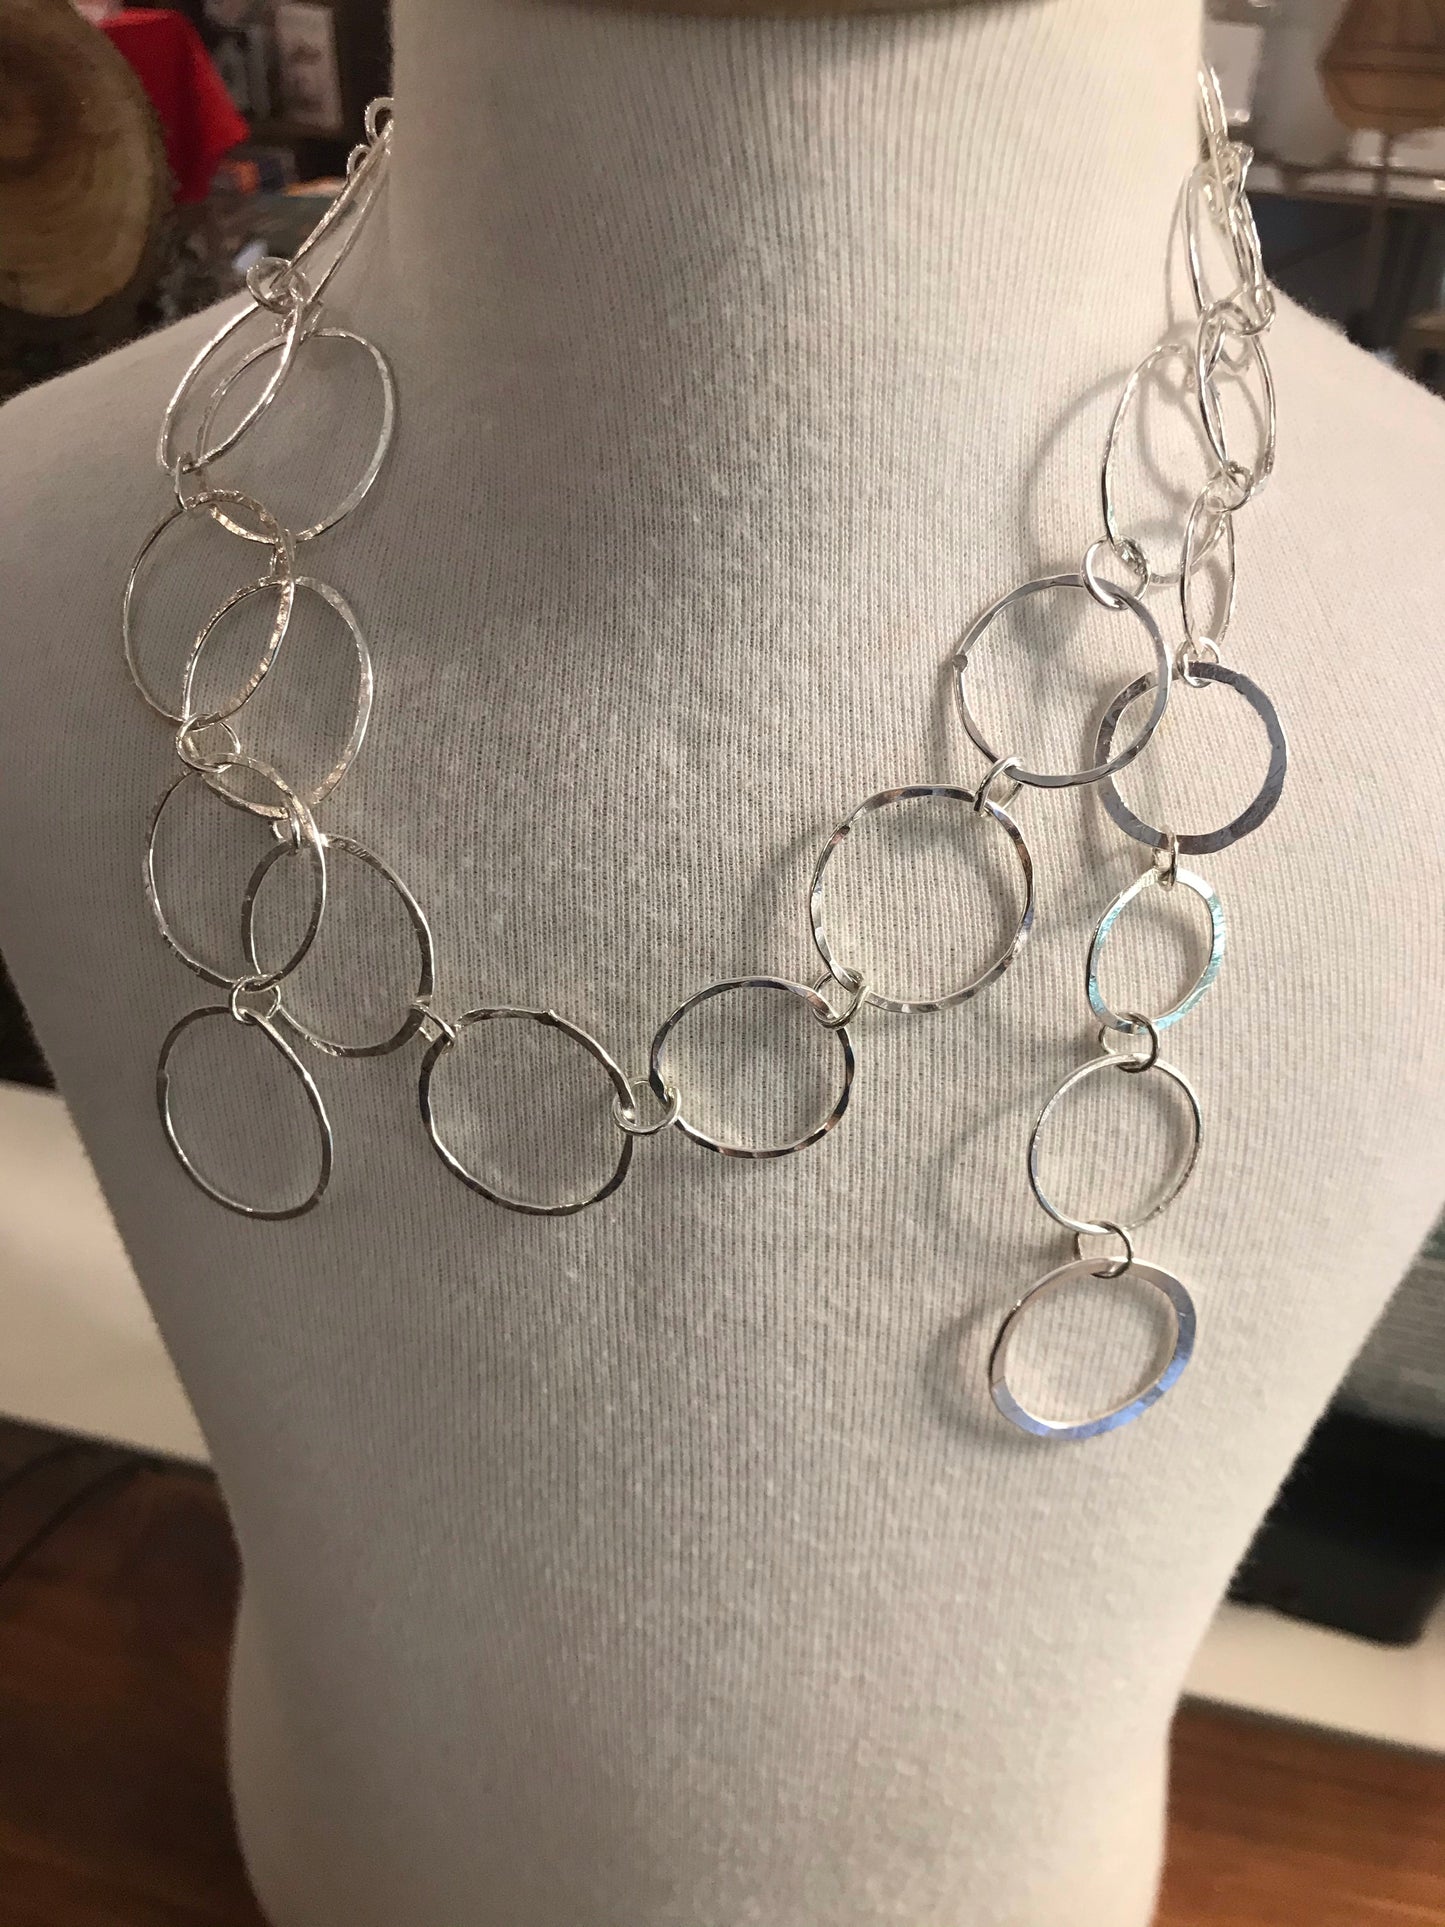 Handmade chain 50cm - Sarah Munnings Jewellery